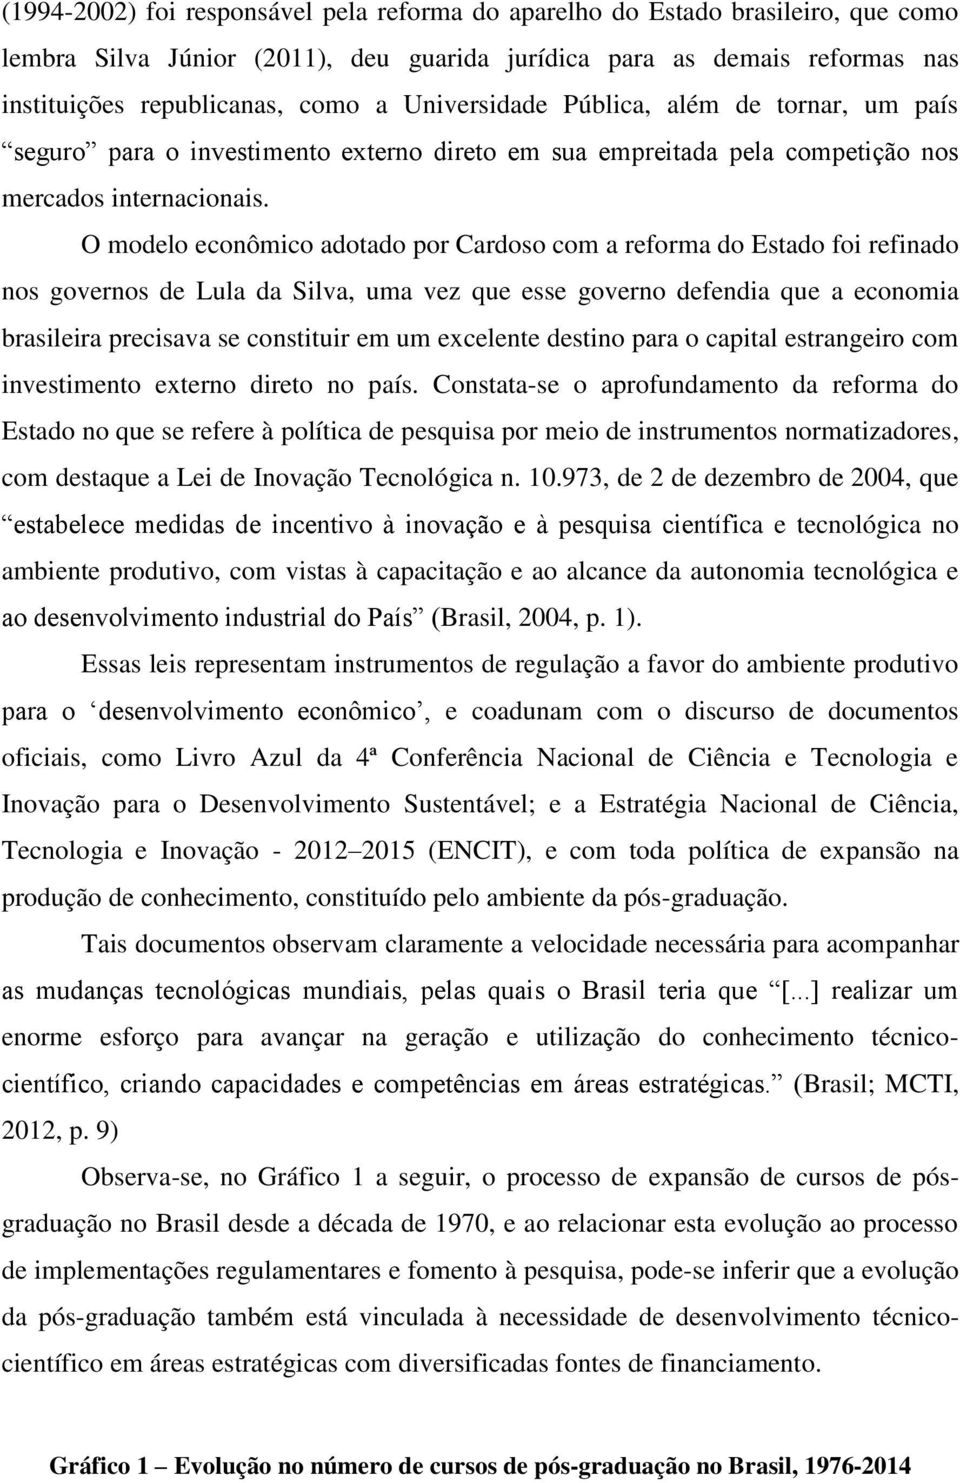 O modelo econômico adotado por Cardoso com a reforma do Estado foi refinado nos governos de Lula da Silva, uma vez que esse governo defendia que a economia brasileira precisava se constituir em um